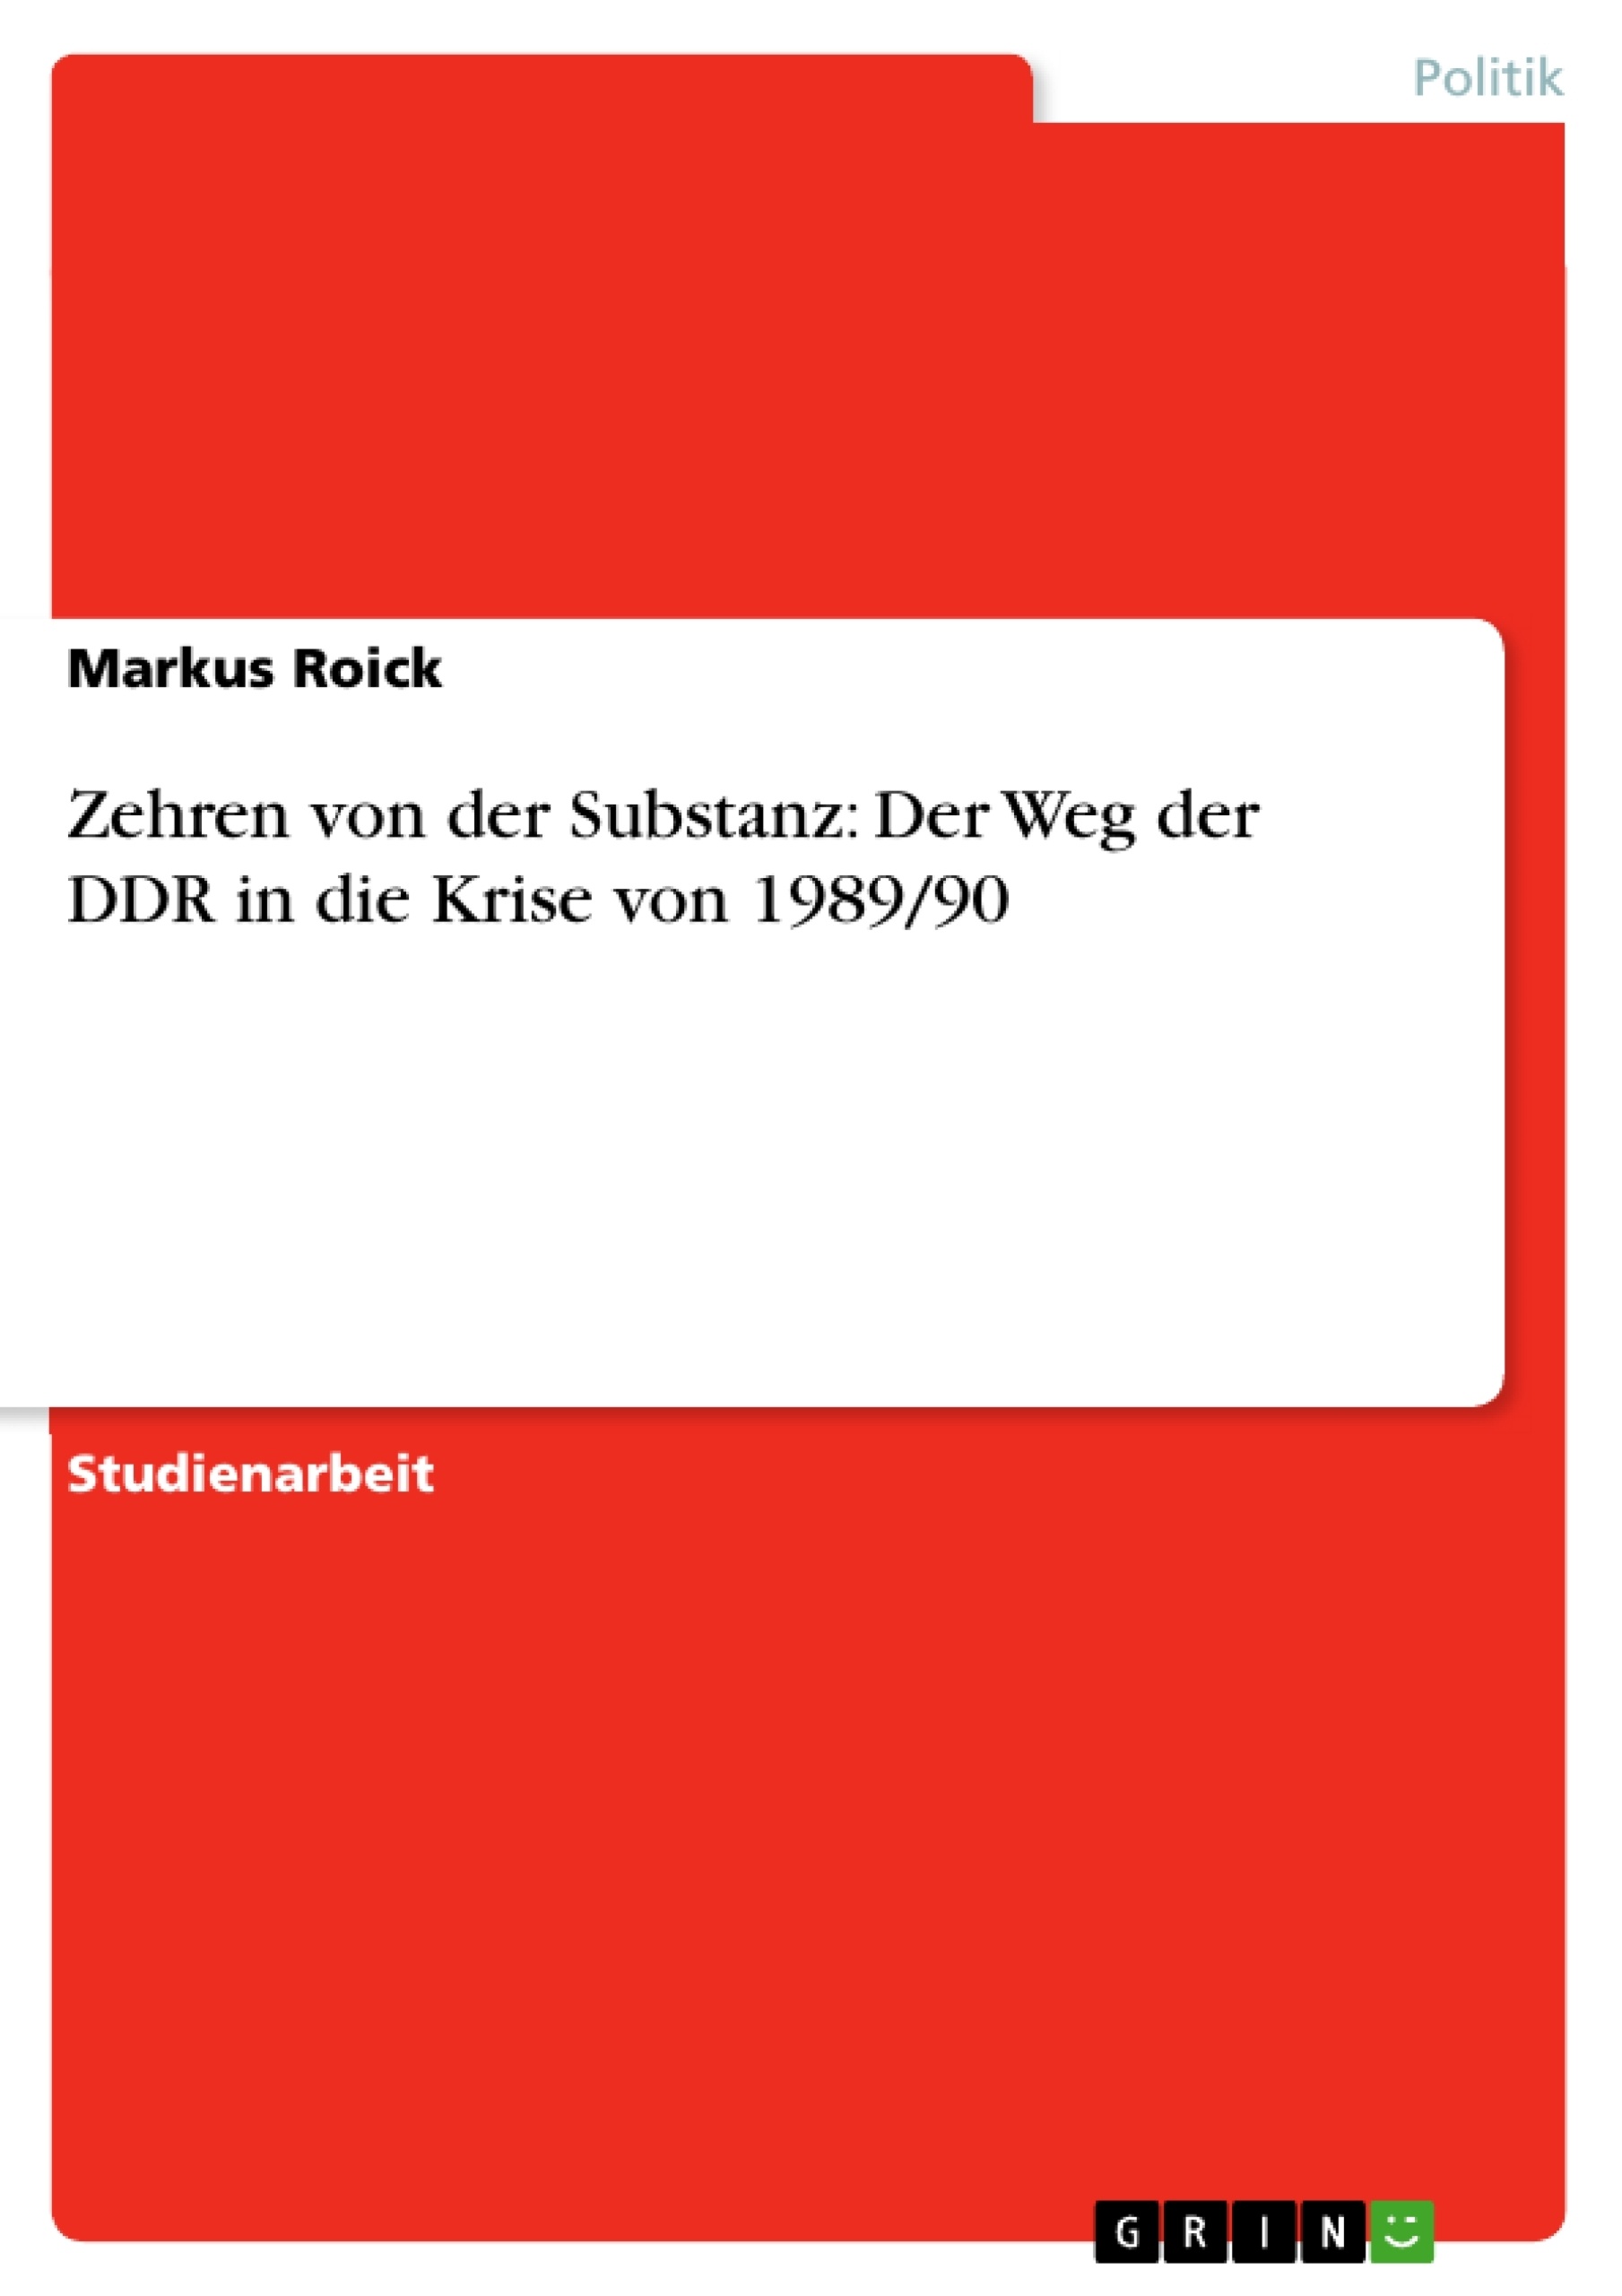 Title: Zehren von der Substanz: Der Weg der DDR in die Krise von 1989/90